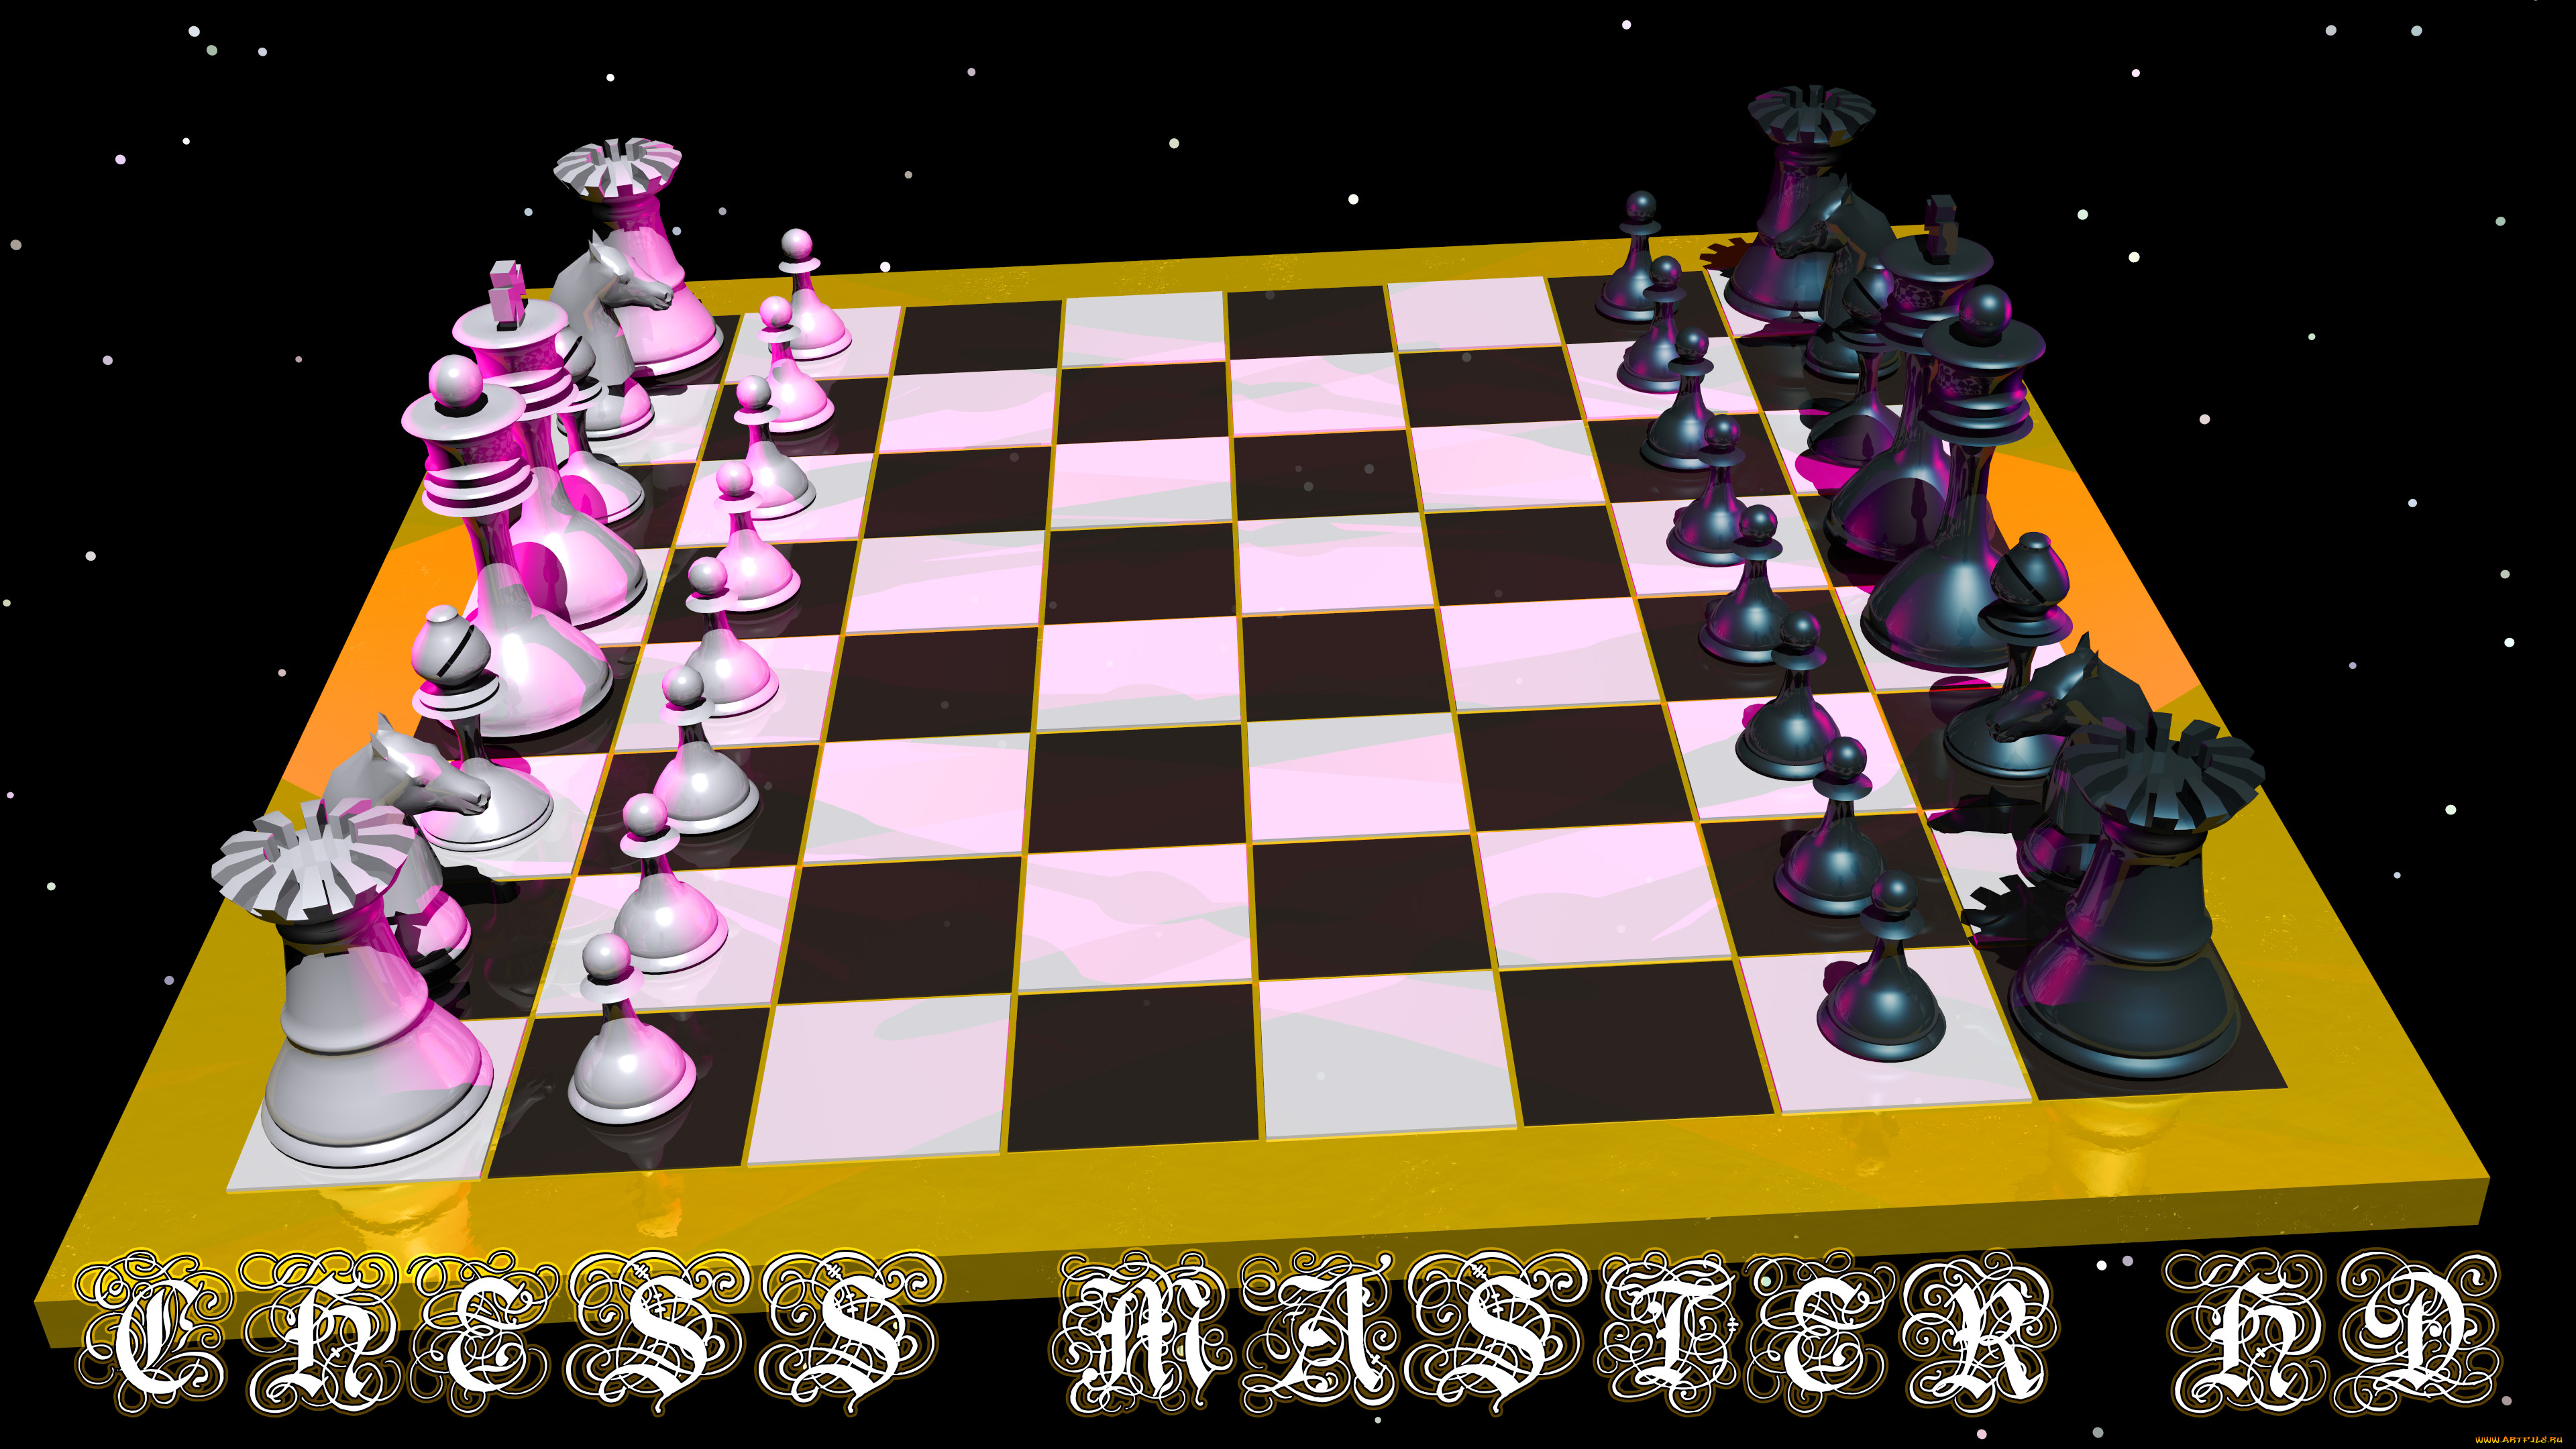  , ~~~~~~, chessmaster